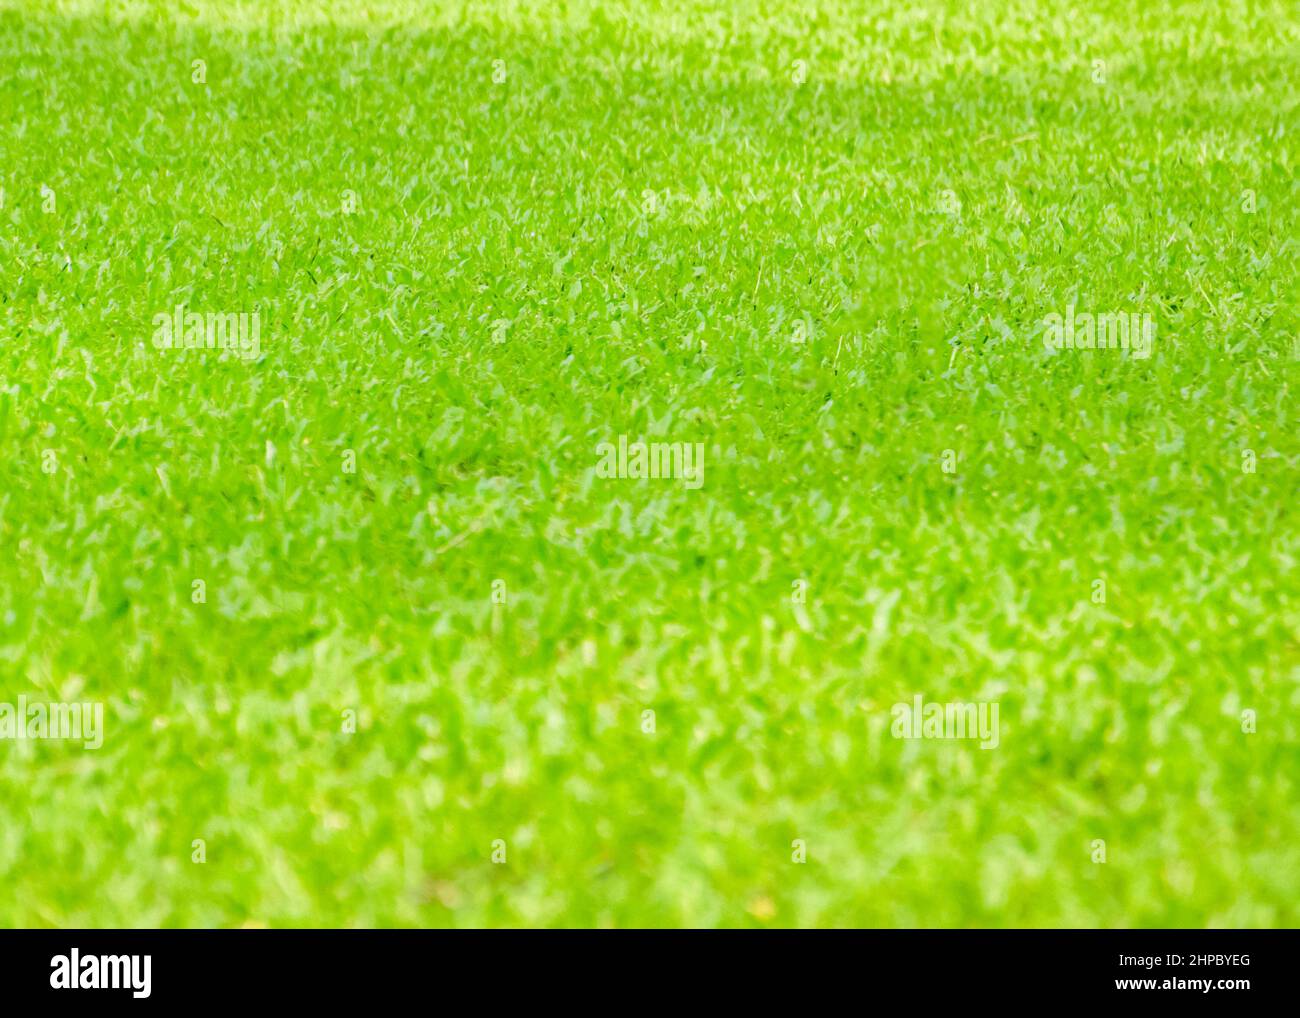 fond vert plus bleu naturel - herbe sur la pelouse, pelouse tondue. Banque D'Images